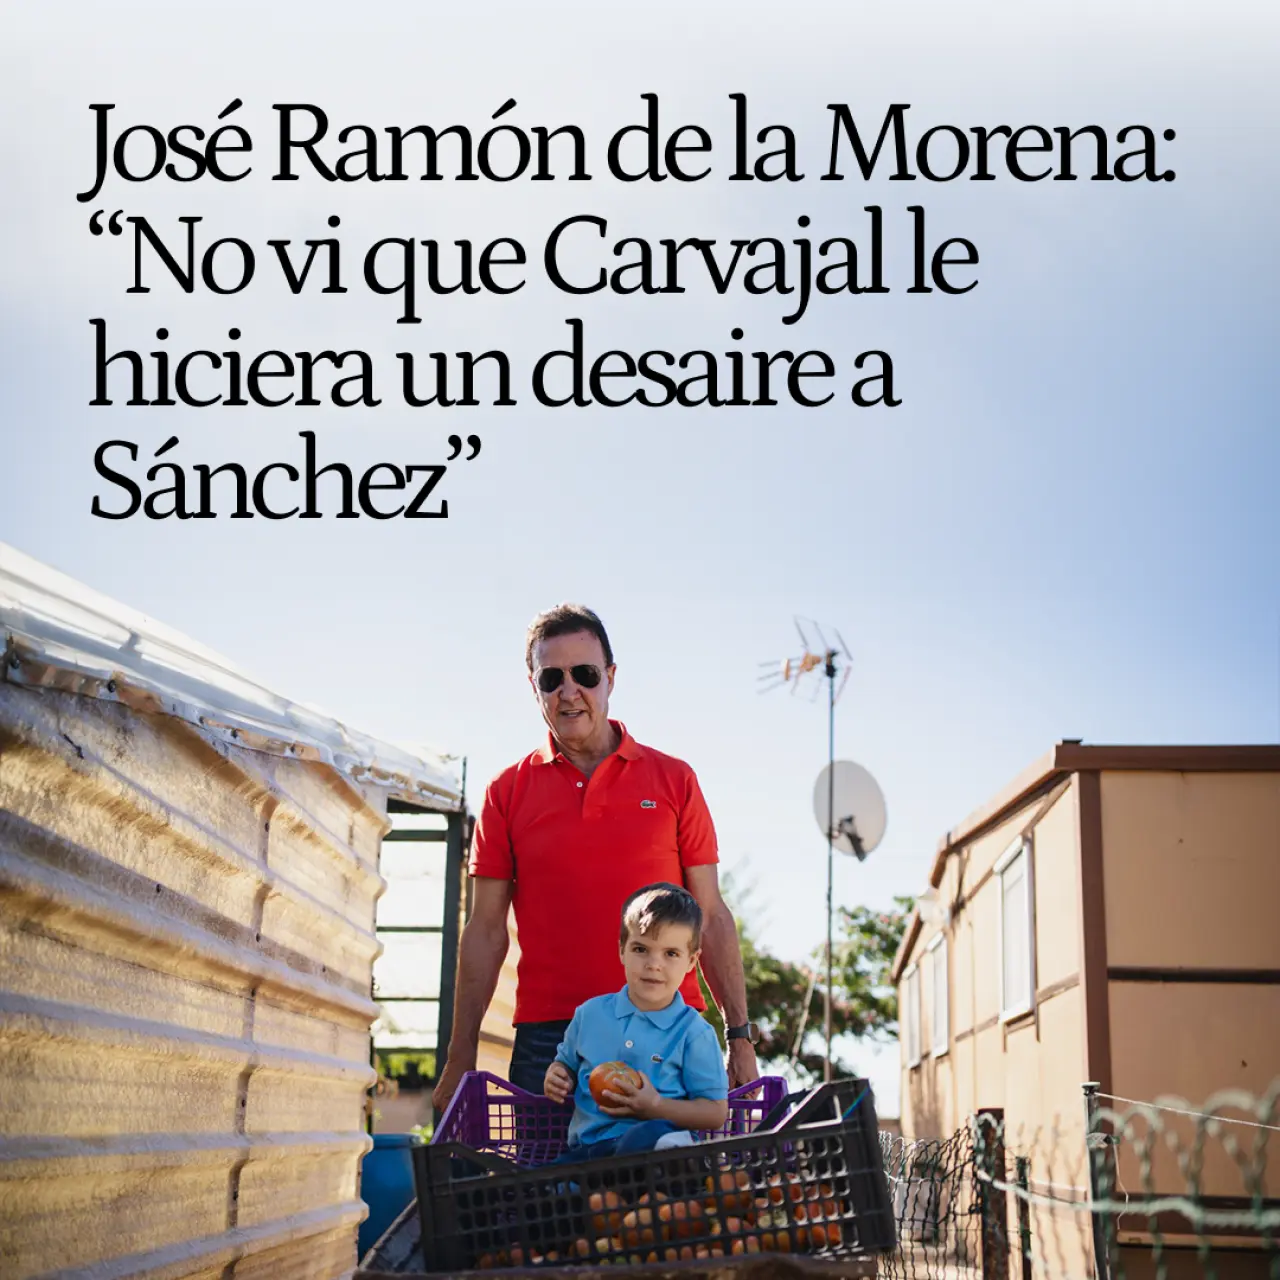 En la huerta de José Ramón de la Morena: "No vi que Carvajal le hiciera un desaire a Sánchez. ¿Pensaban que se tenía que cuadrar?"